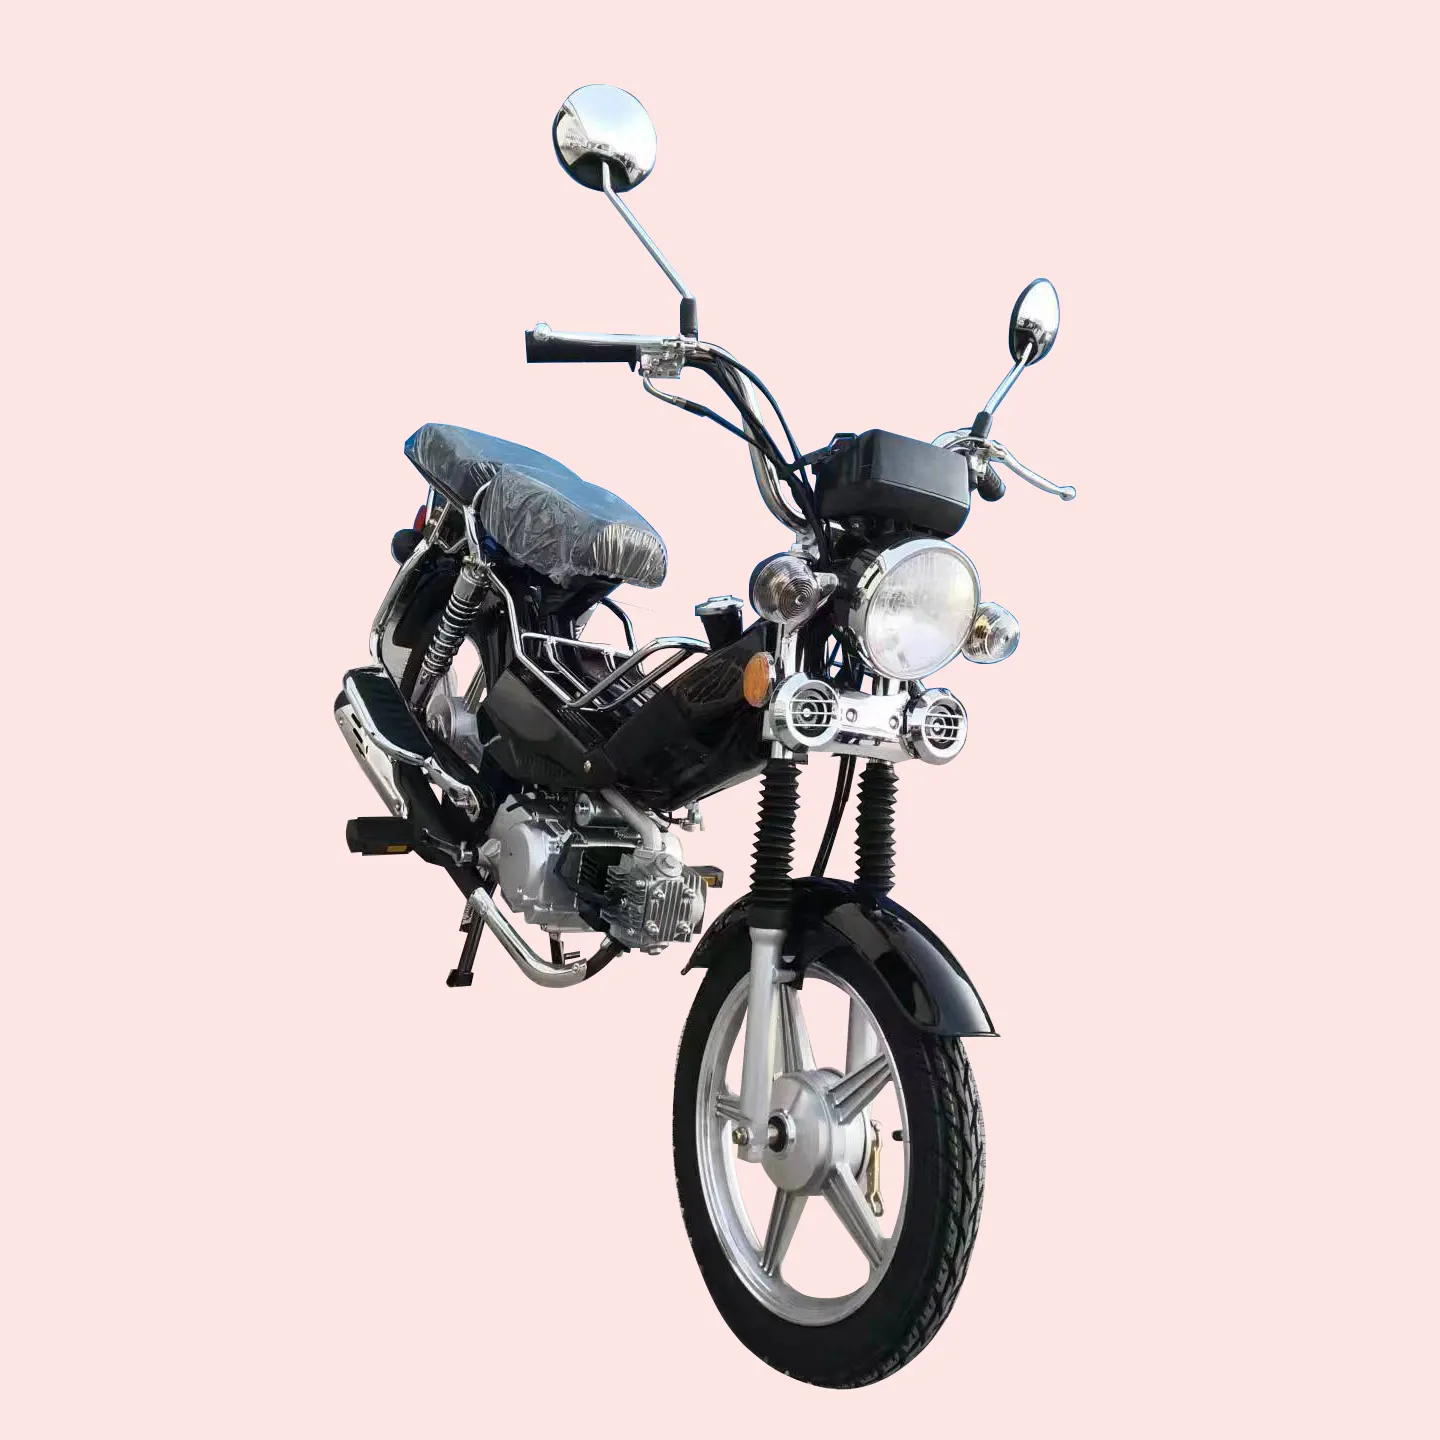 Dijual motor Moped 110cc, Cub Mini Motos Chopper Motocicleta murah